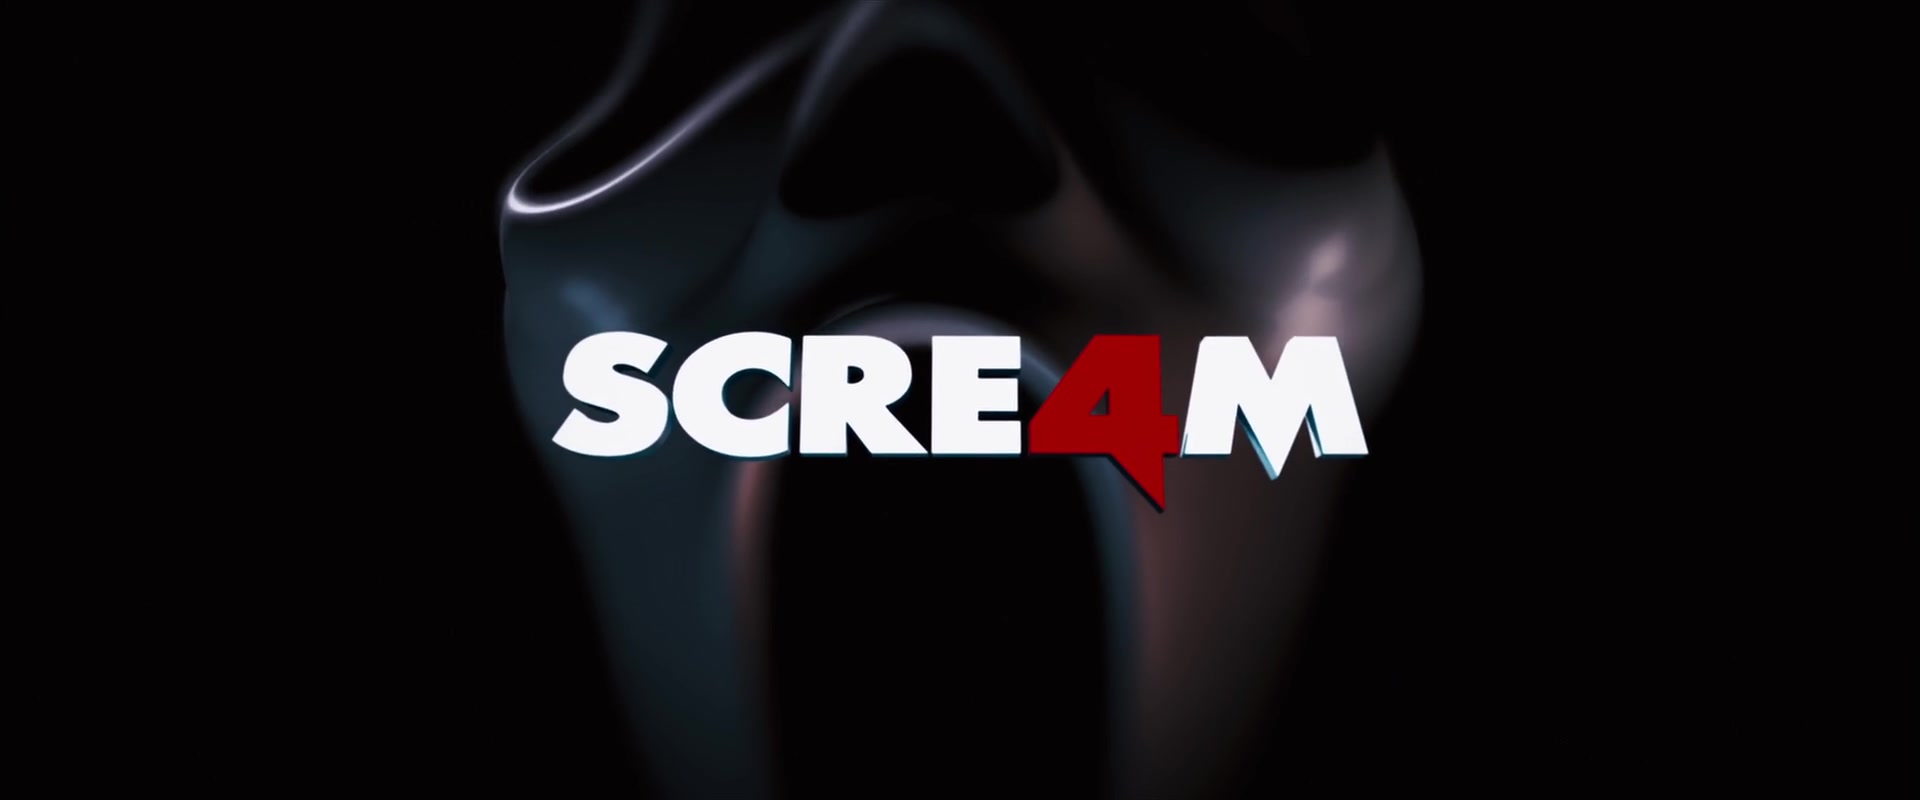 Scream 4 - Wikipedia